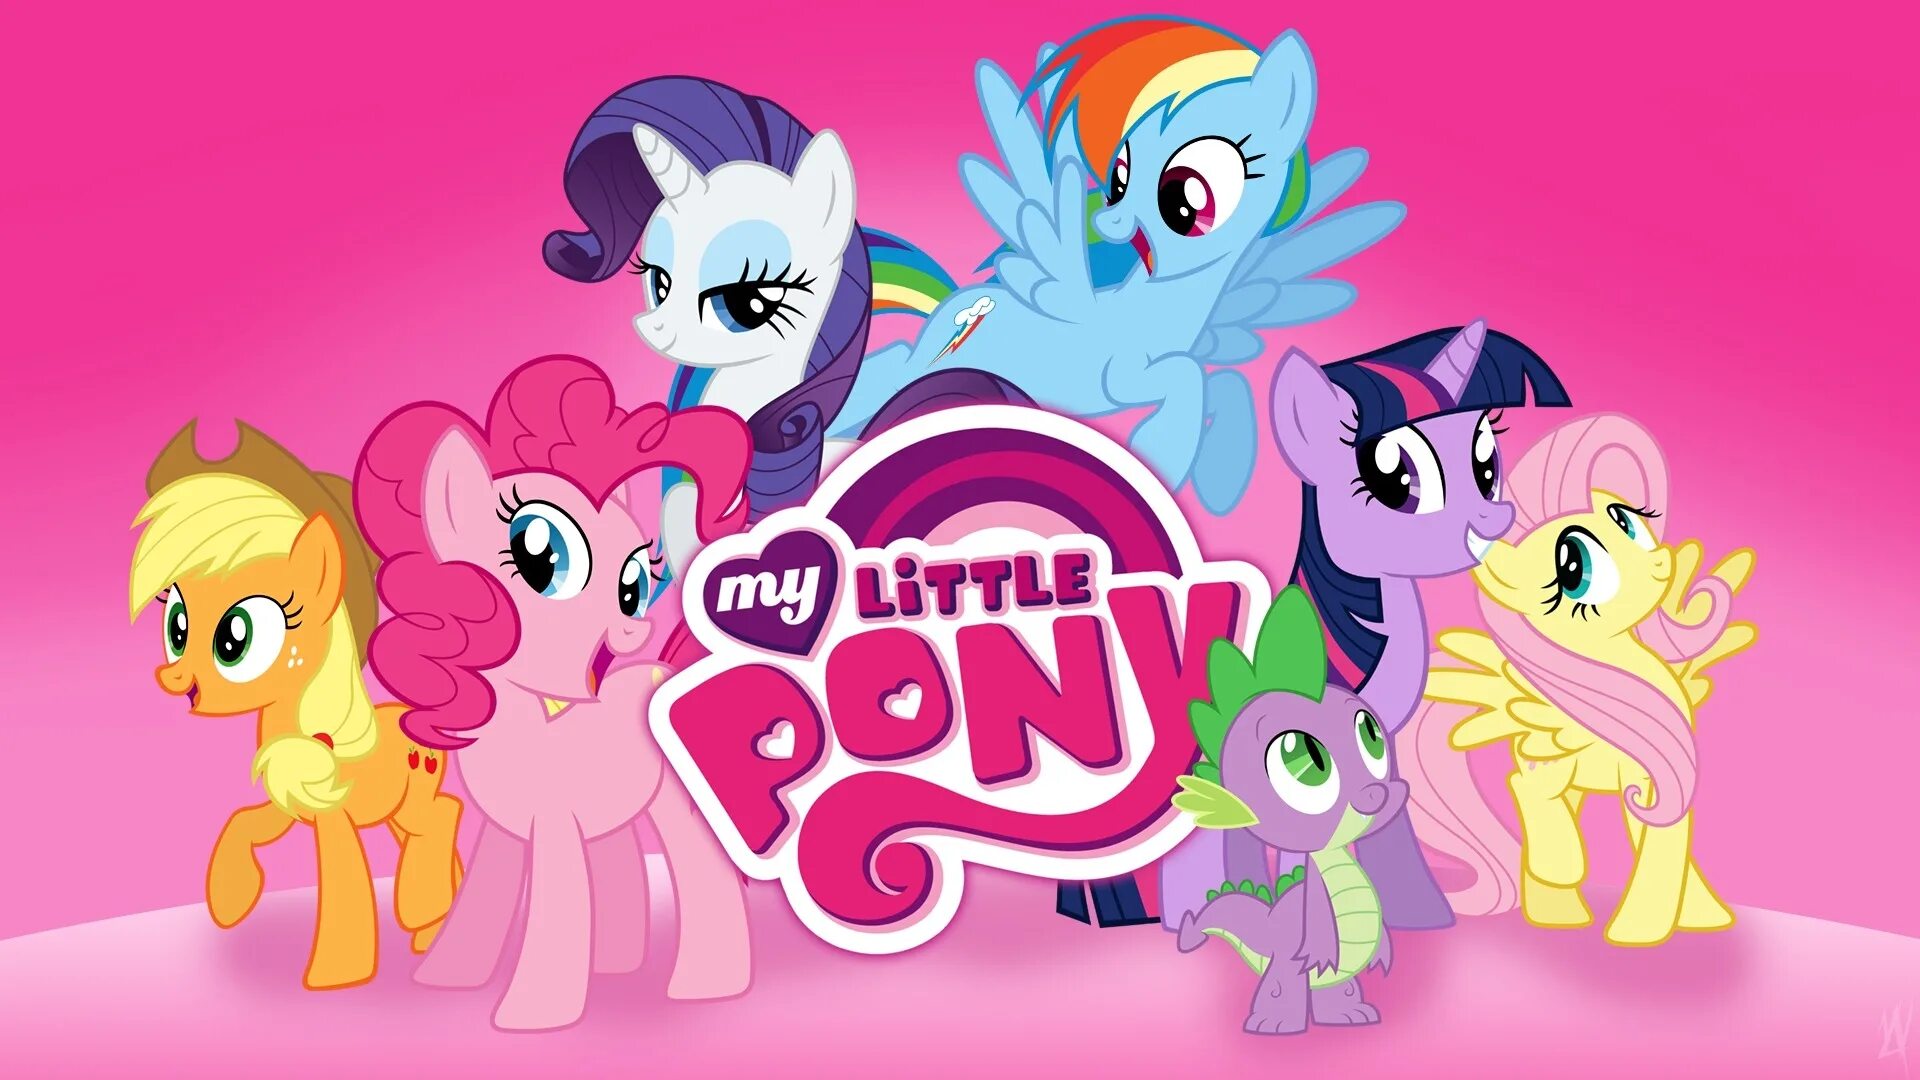 Мир my little pony. My little Pony. My little Pony Friendship is Magic игра.